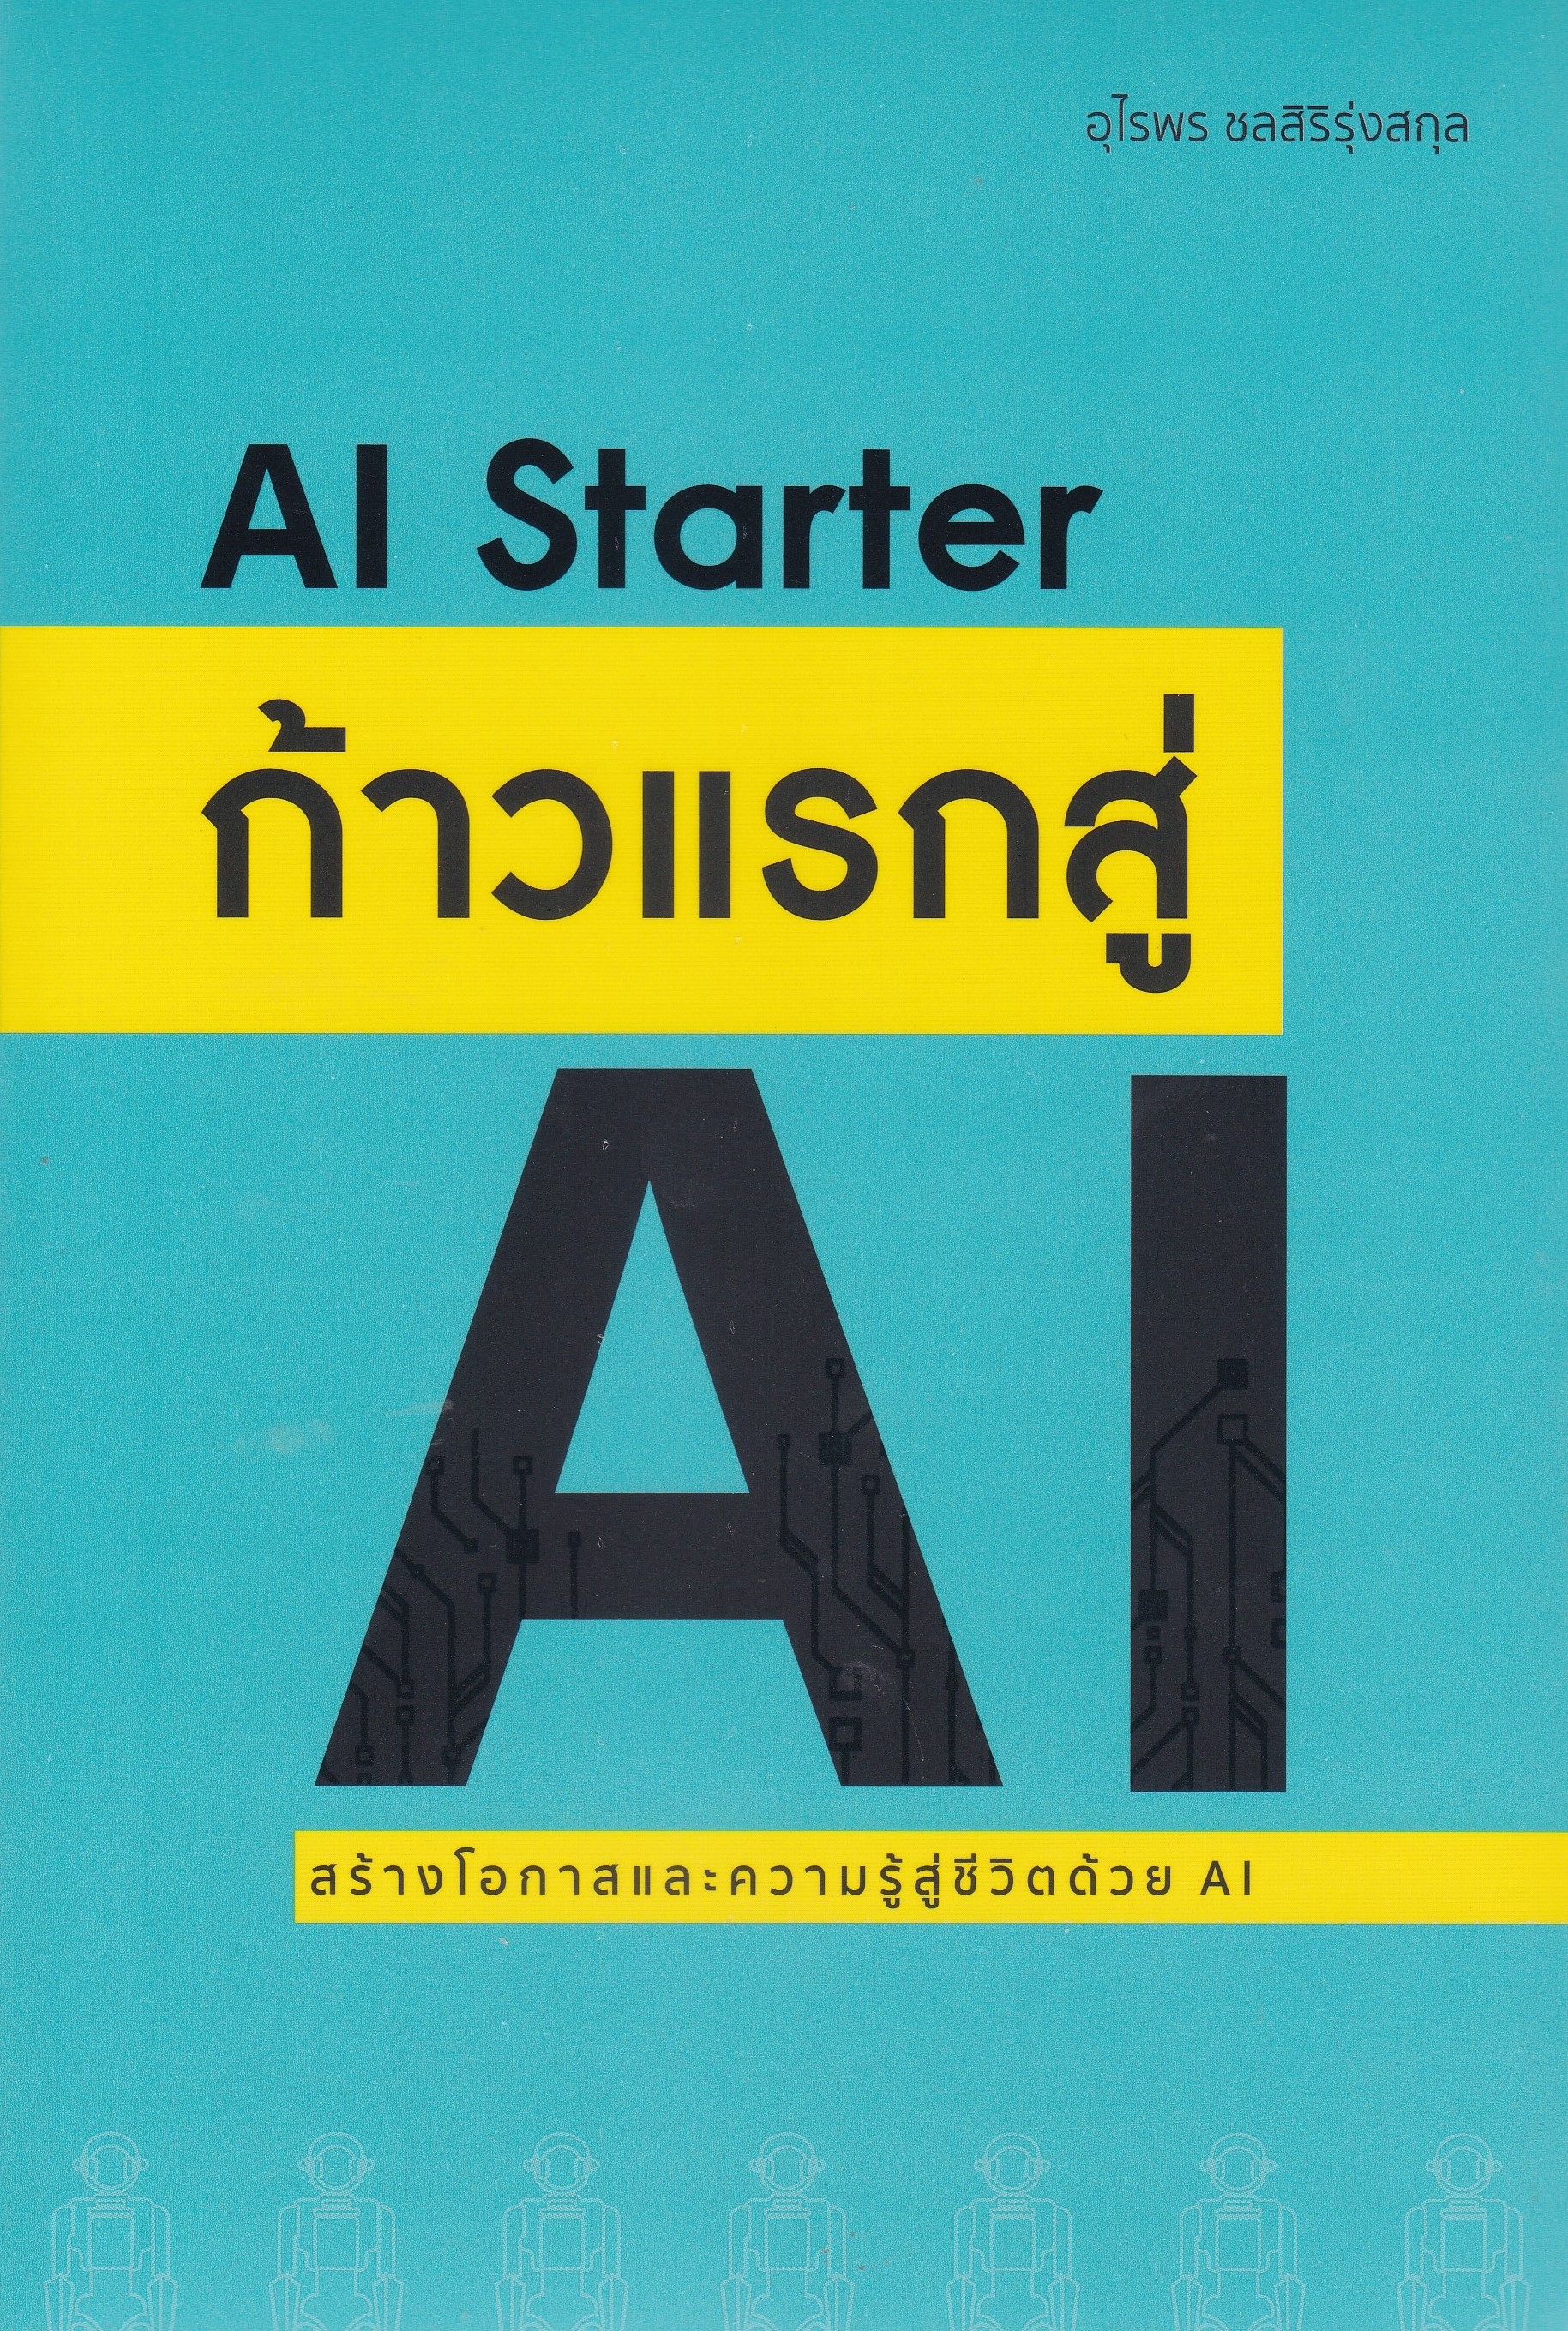 ก้าวแรกสู่ AI (AI STARTER) สร้างโอกาสและความรู้สู่ชีวิตด้วย AI